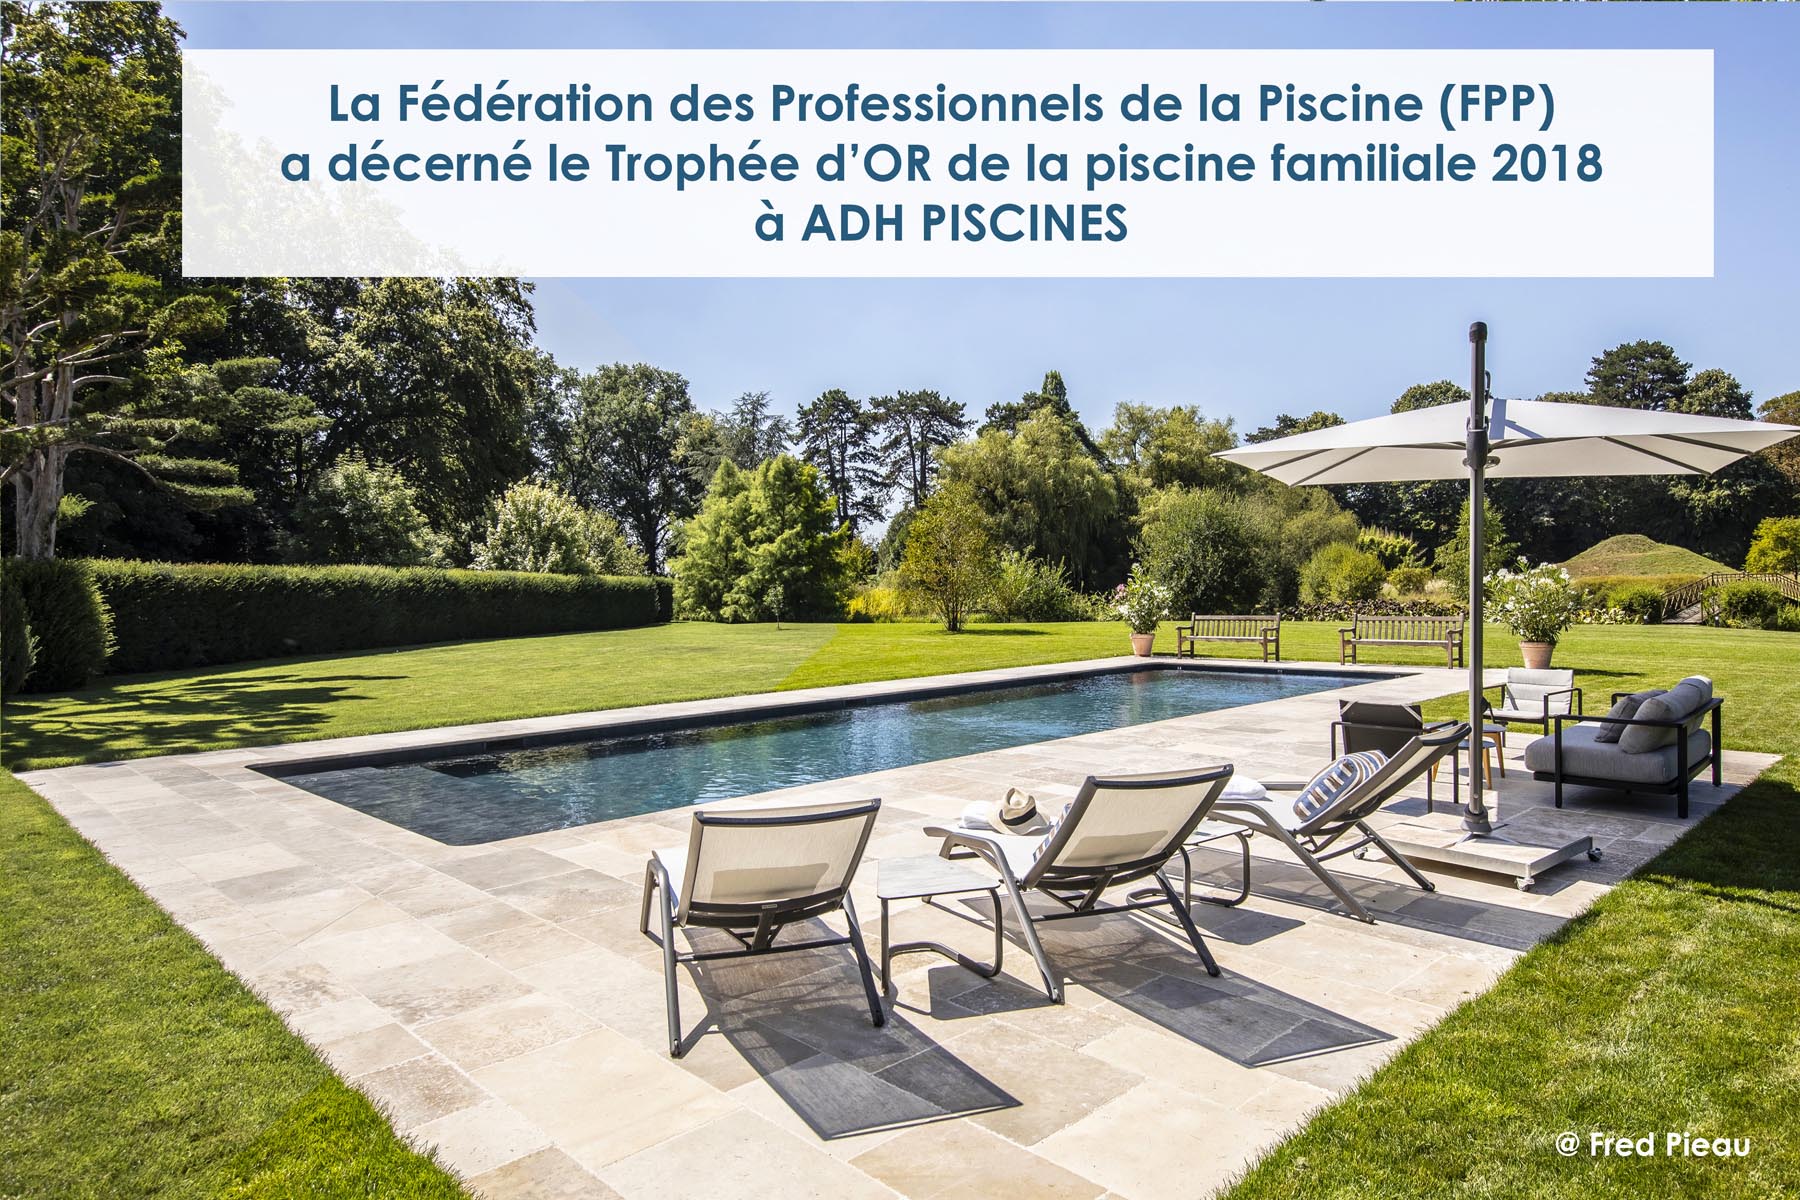 ADH Piscine, Trophée d’or FPP de la piscine familiale de forme angulair